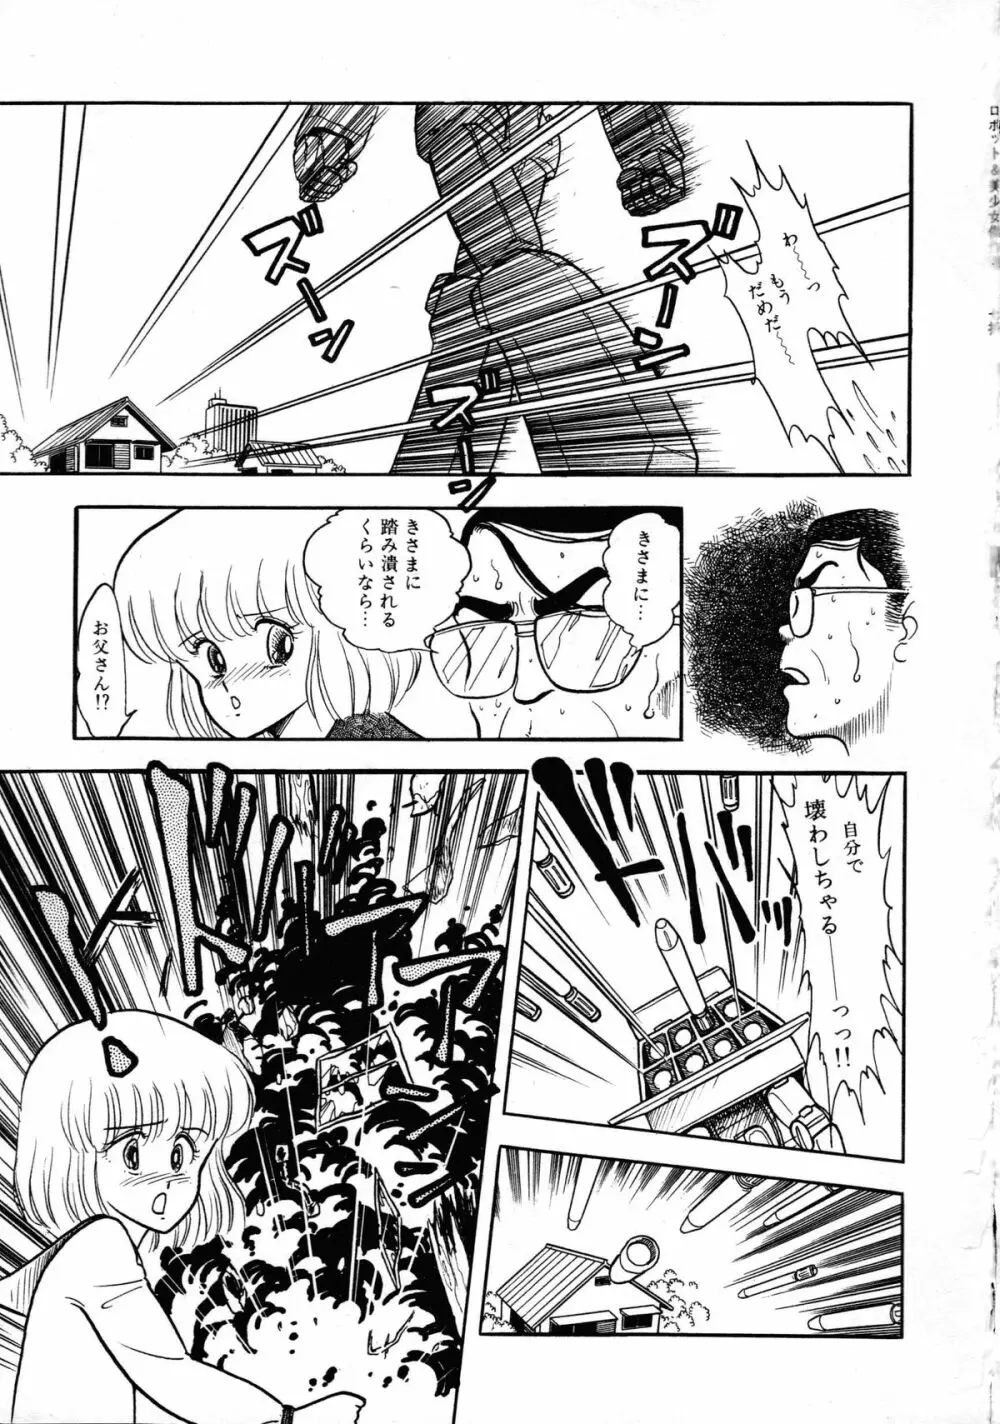 ロボット&美少女傑作選 レモン・ピープル1982-1986 89ページ